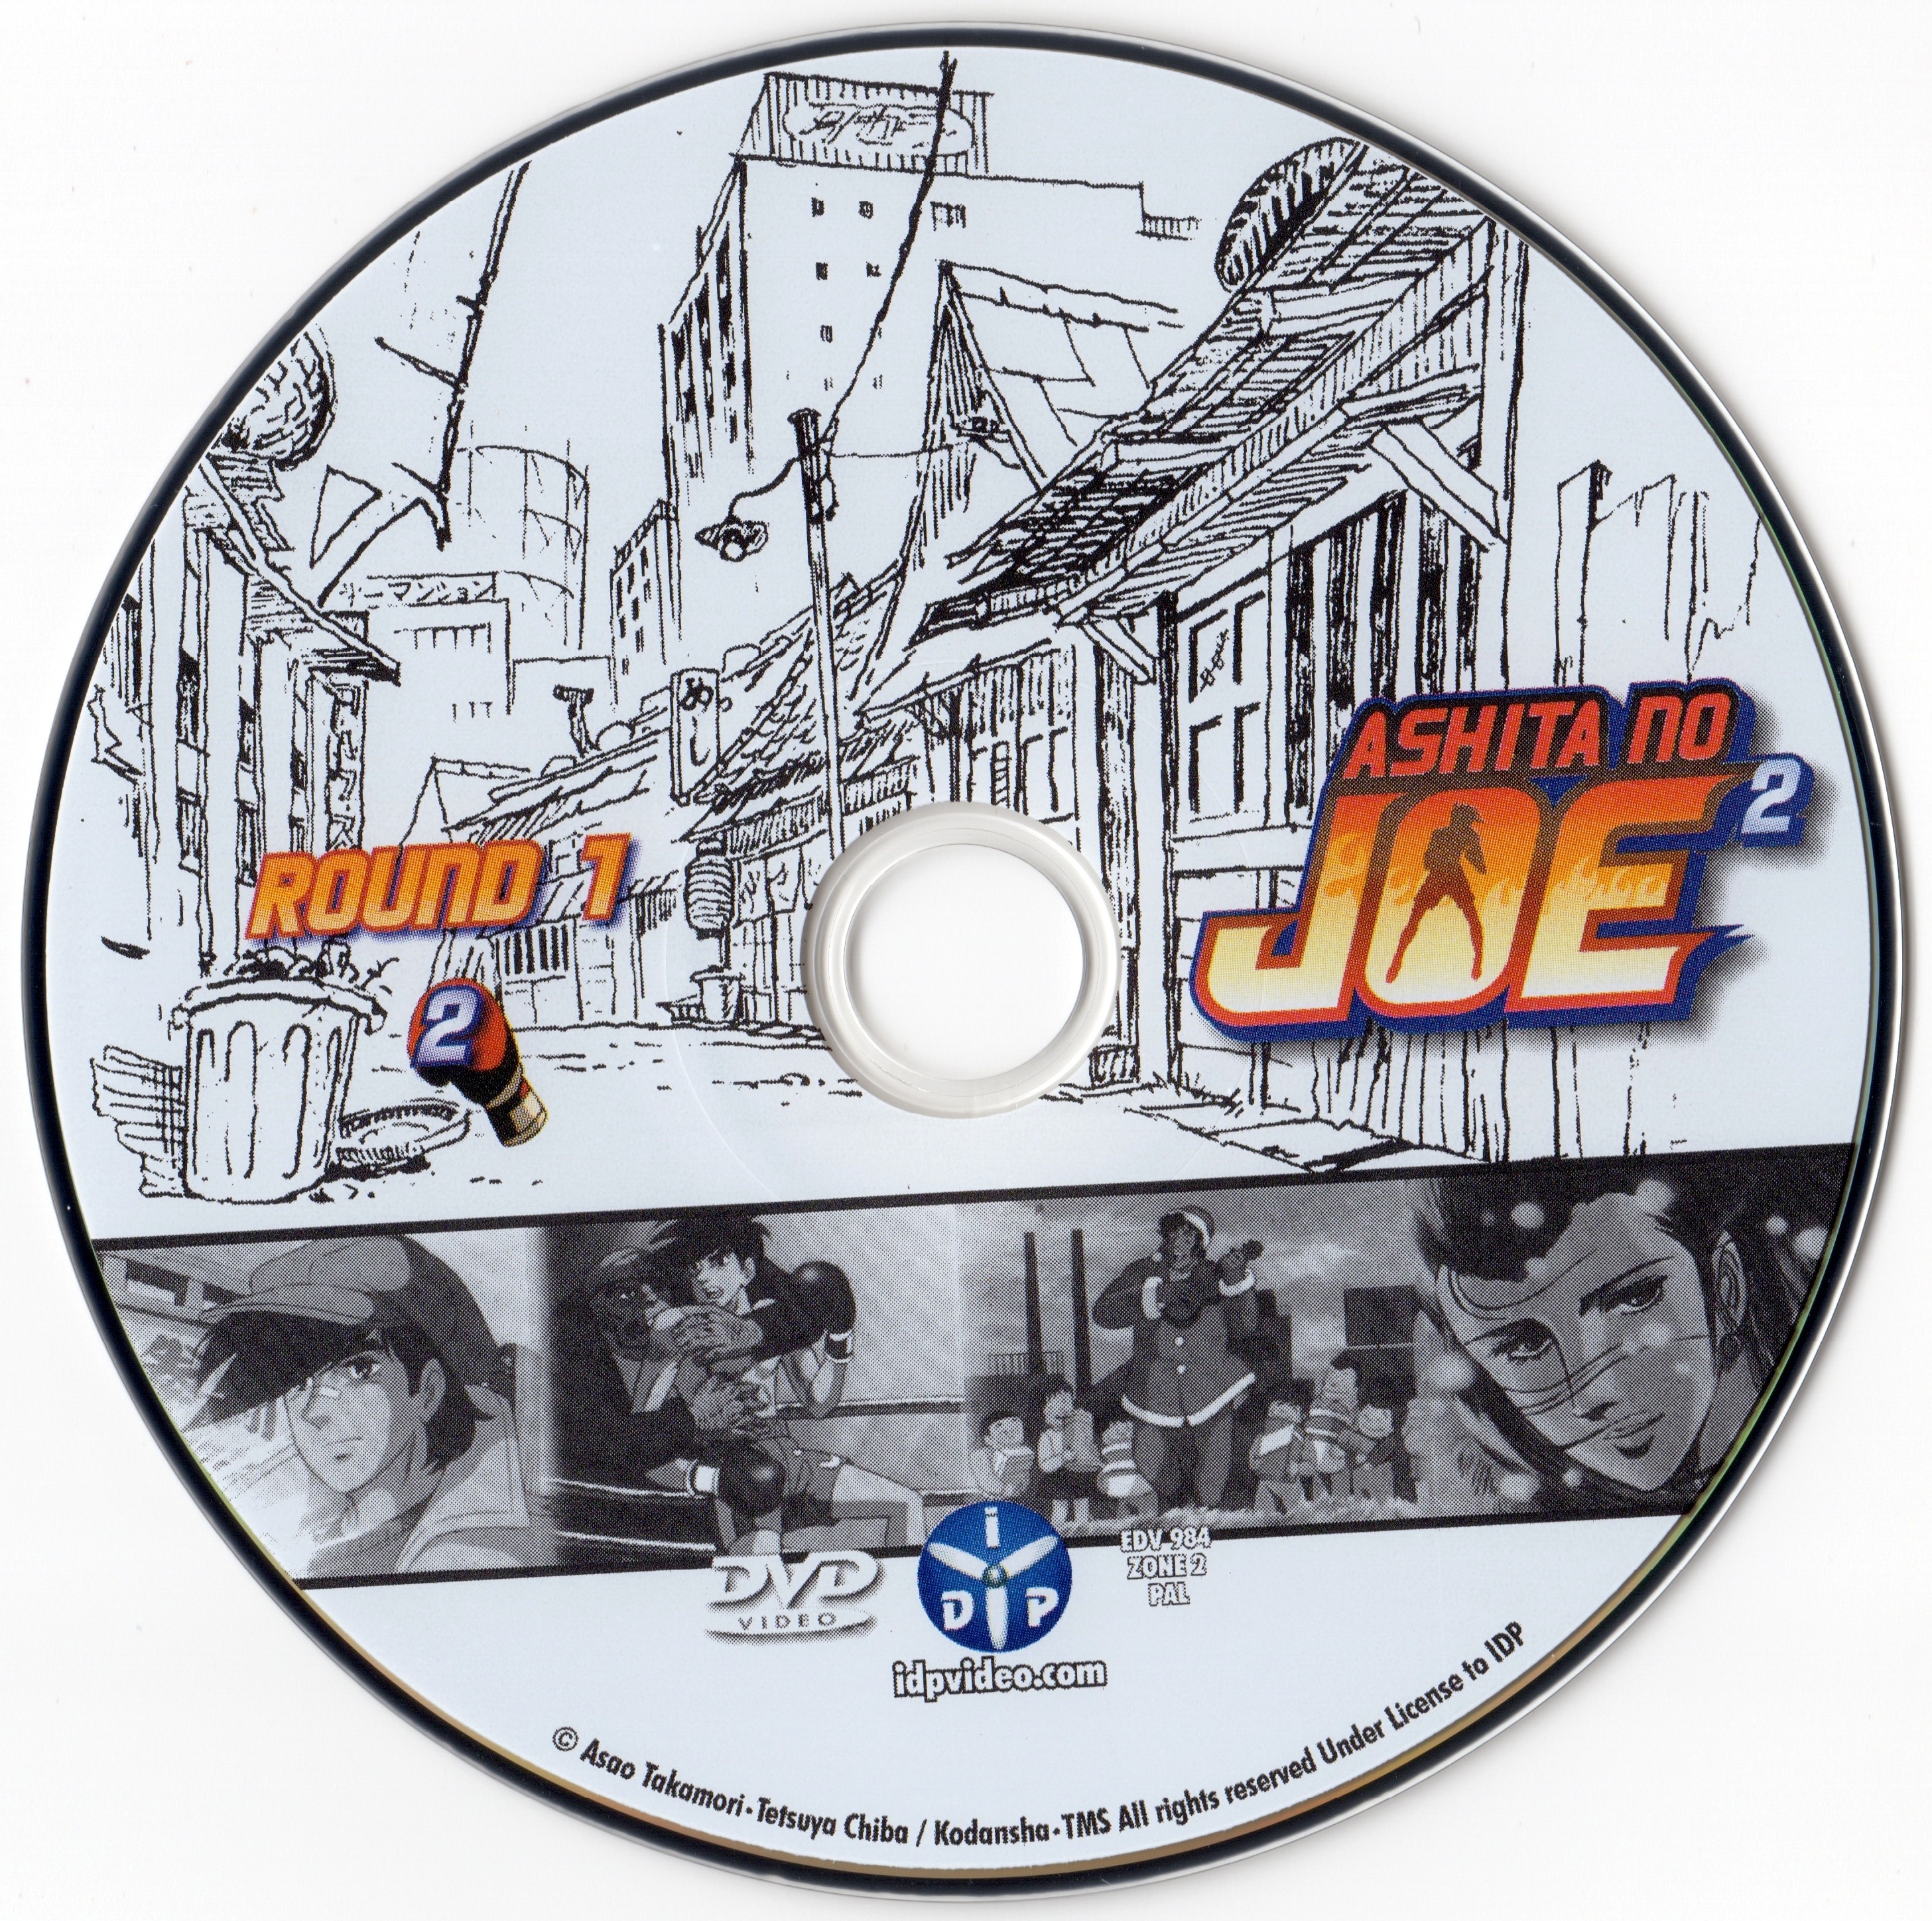 Ashita No Joe 2 Round 1 DVD 2